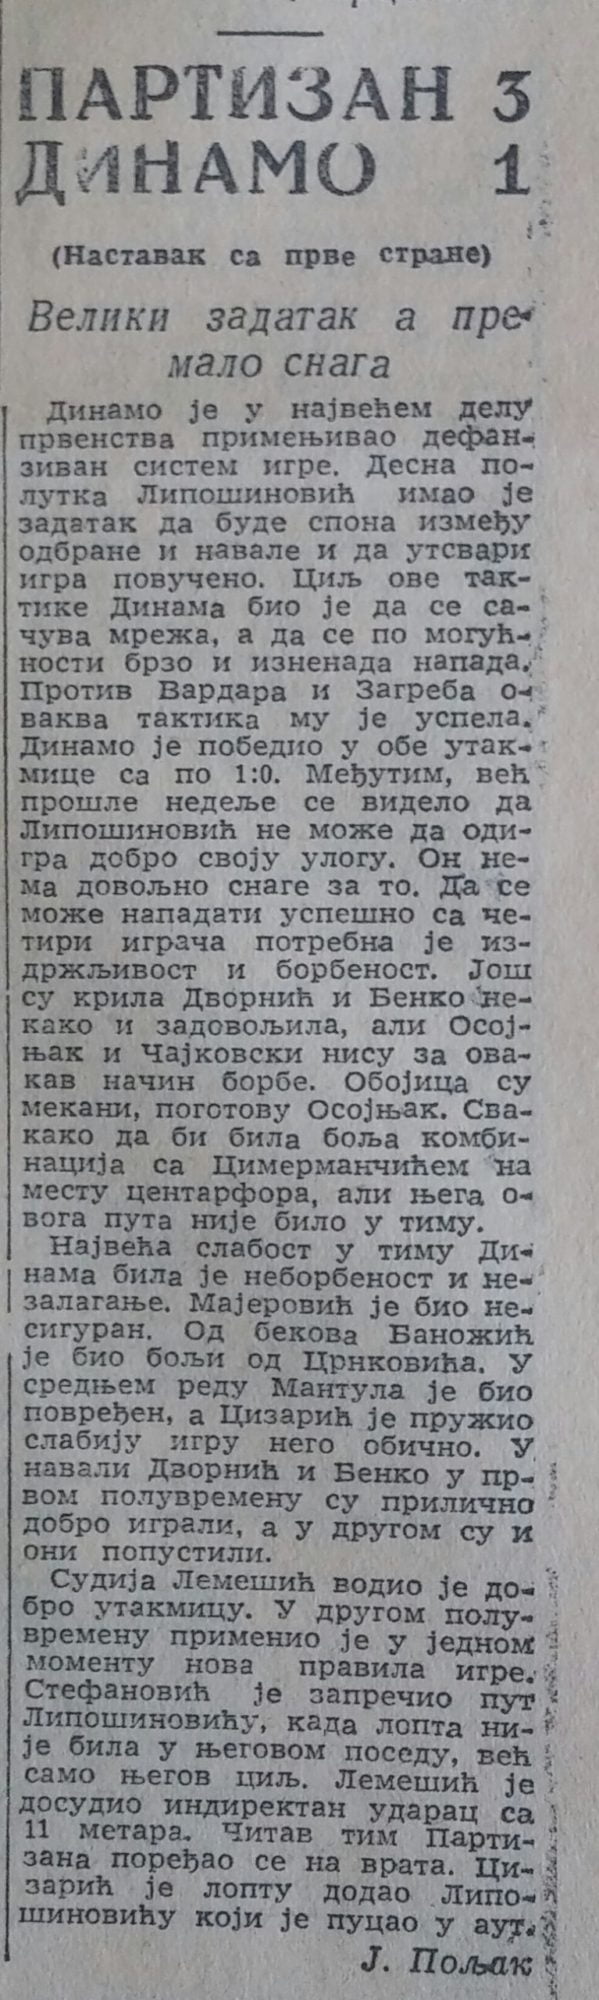 SEZONA 1952/53 22.03.1953.-Dinamo-Zg-Partizan-1-3-1-scaled